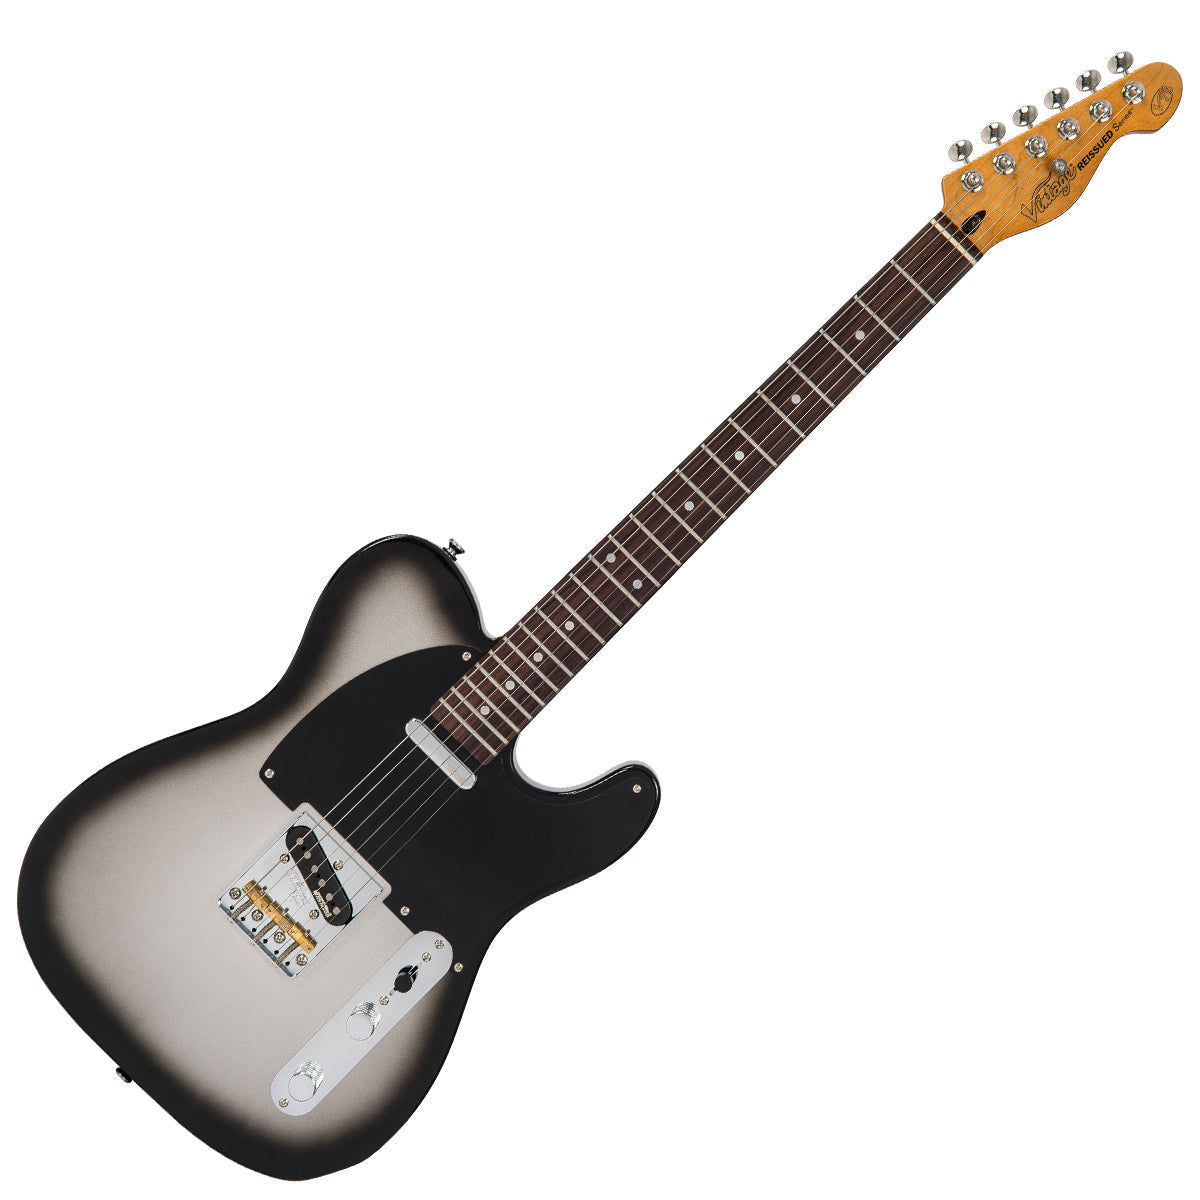 Vintage V75 ReIssued Electric Guitar ~ Silverburst, Electric Guitar for sale at Richards Guitars.